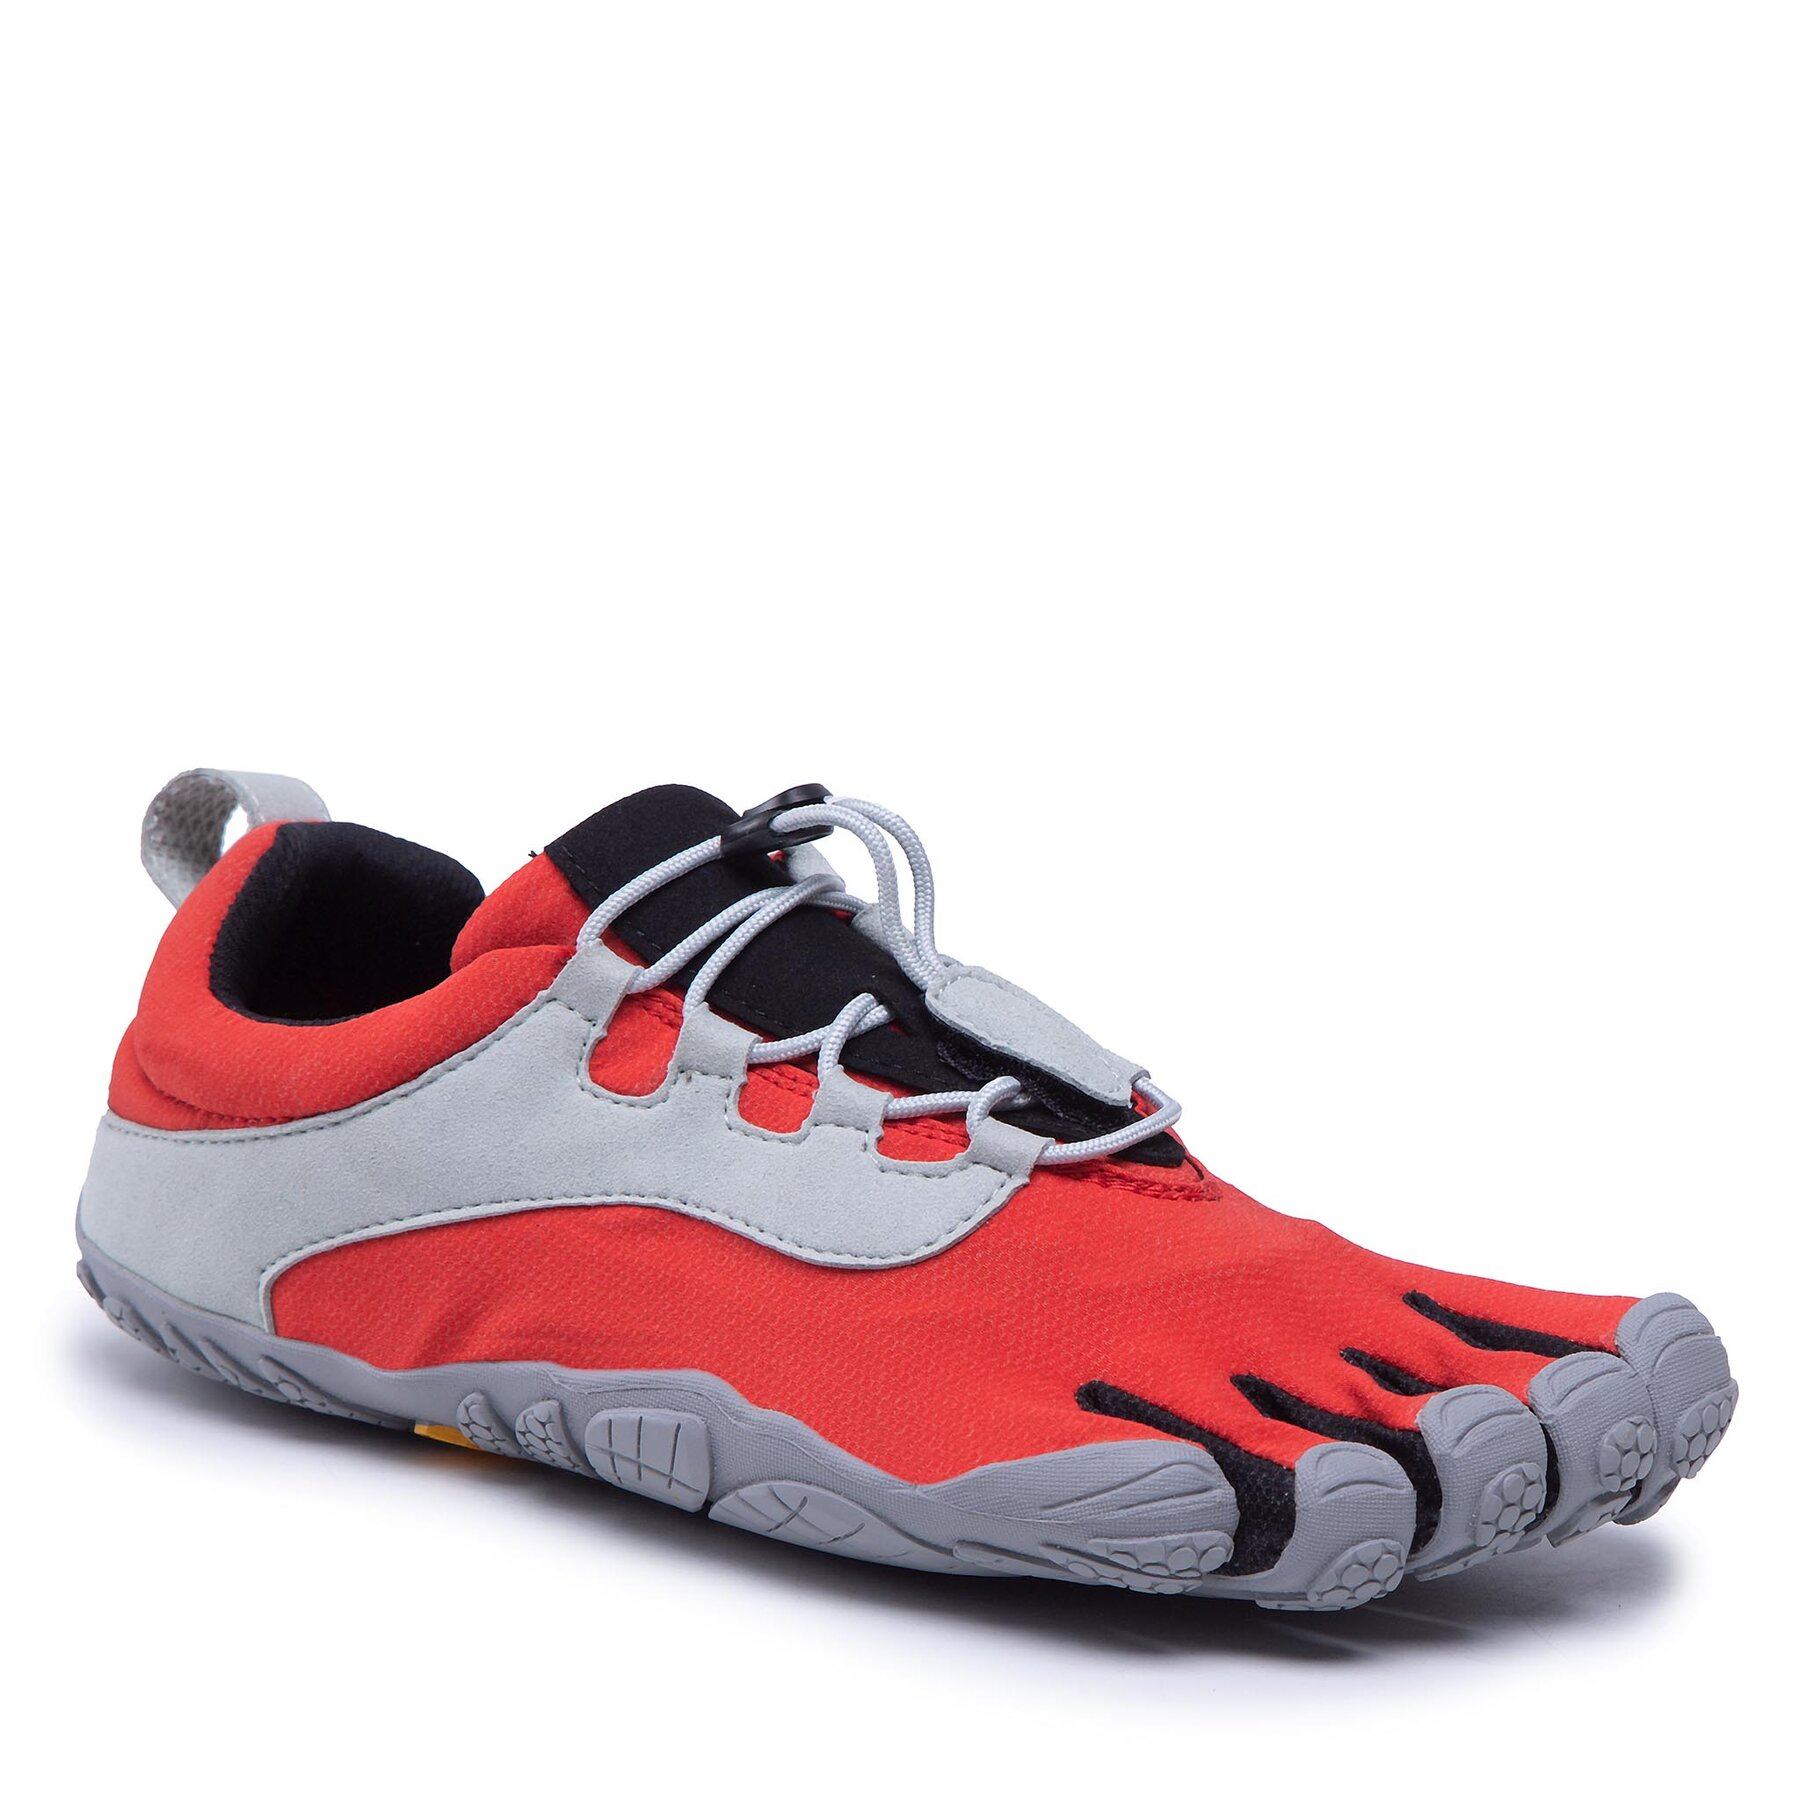 Pantofi Vibram Fivefingers V-Run Retro 21M8003 Red/Black/Grey 21M8003 imagine super redus 2022